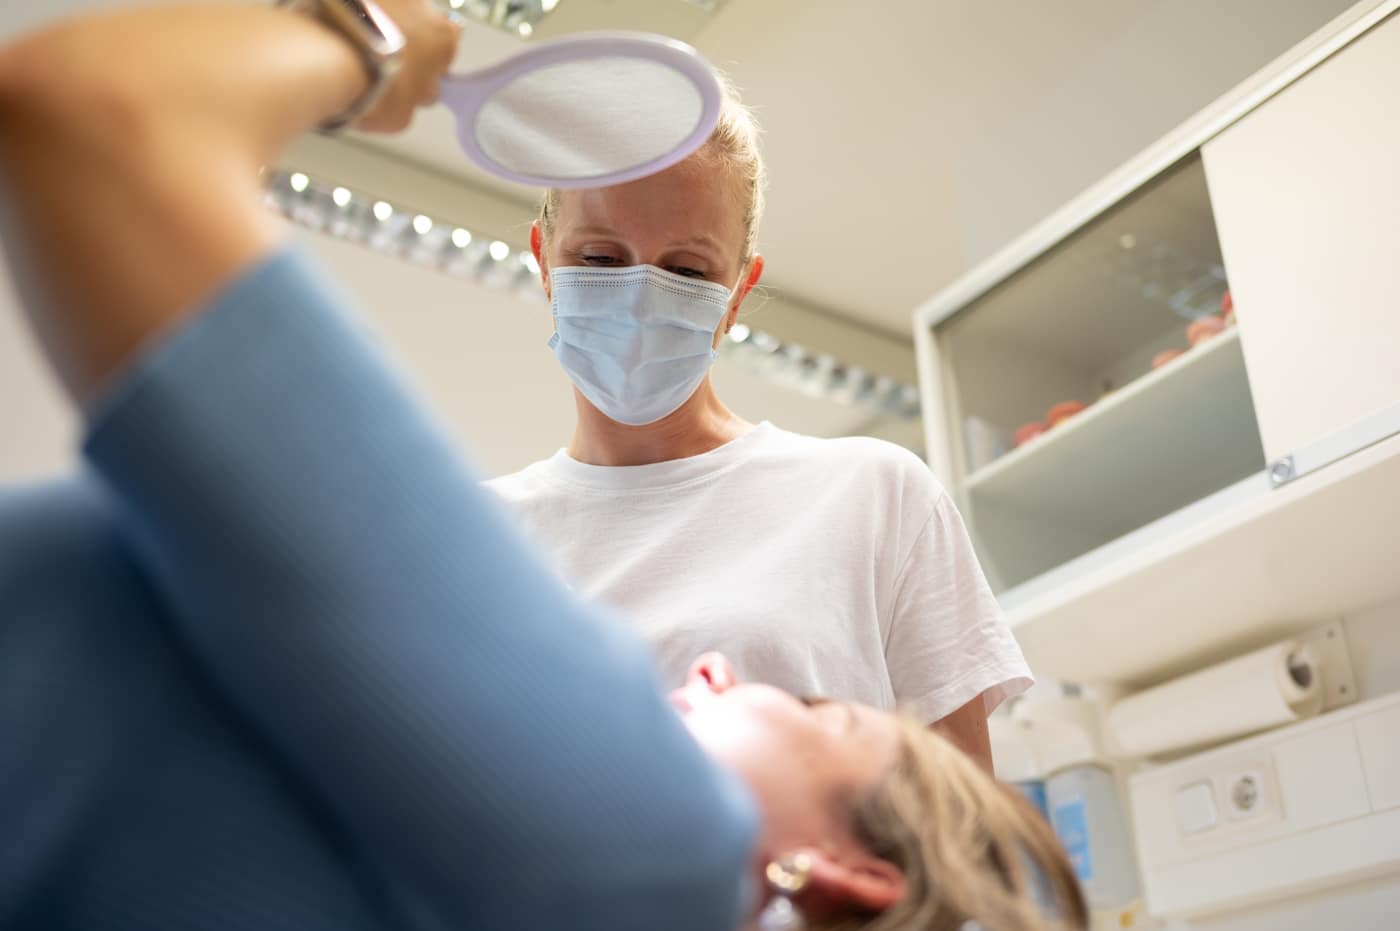 Zahnkorrektur - Meine Aligner Behandlung mit Spark startet